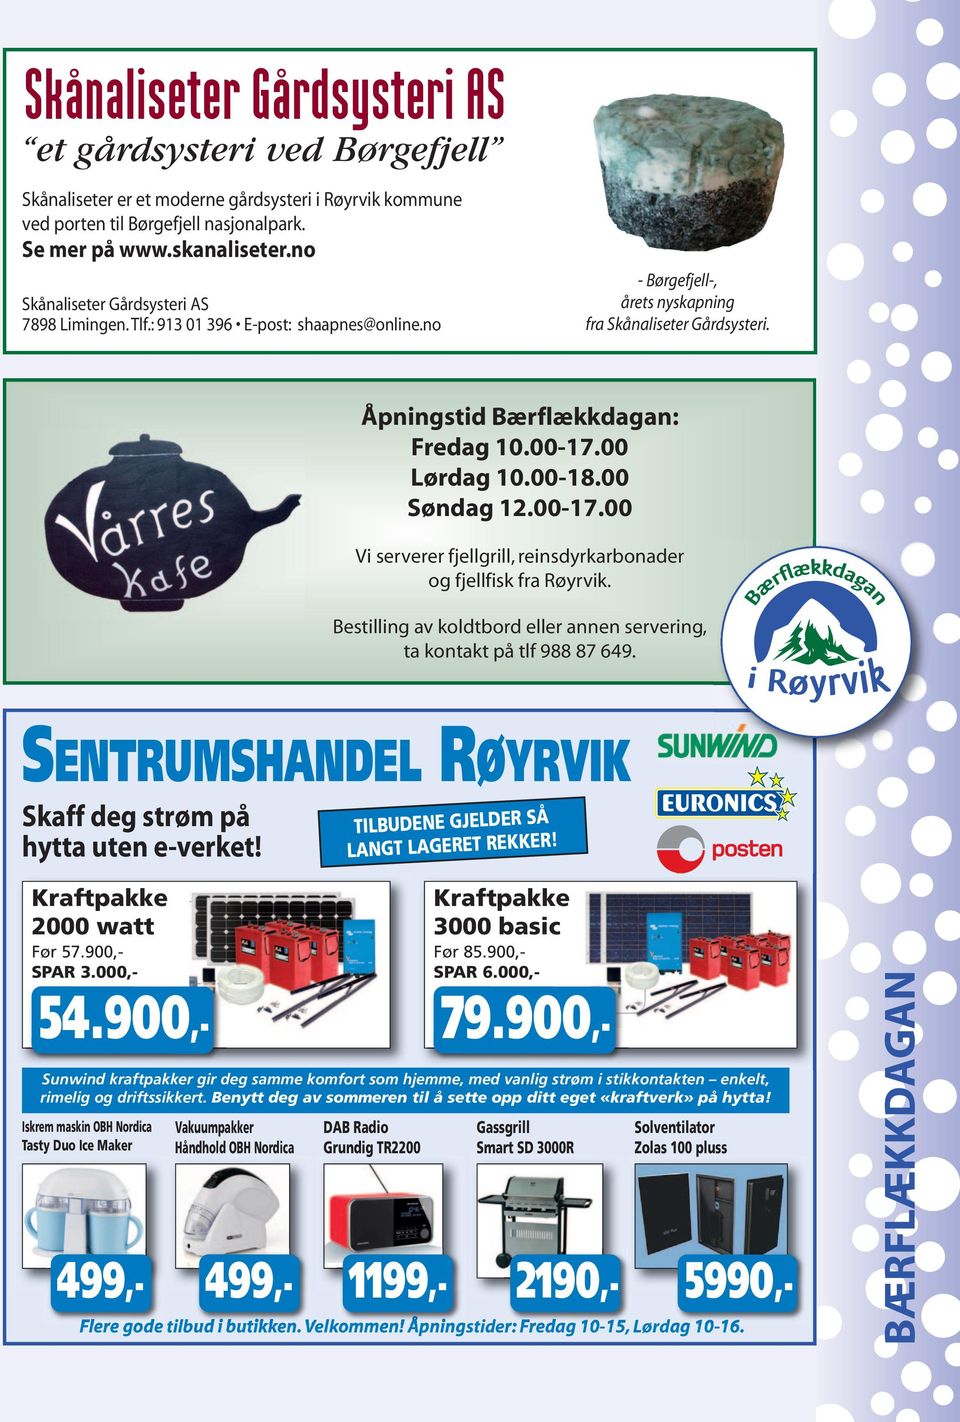 00 Lørdag 10.00-18.00 Søndag 12.00-17.00 Vi serverer fjellgrill, reinsdyrkarbonader og fjellfisk fra Røyrvik. Bestilling av koldtbord eller annen servering, ta kontakt på tlf 988 87 649.